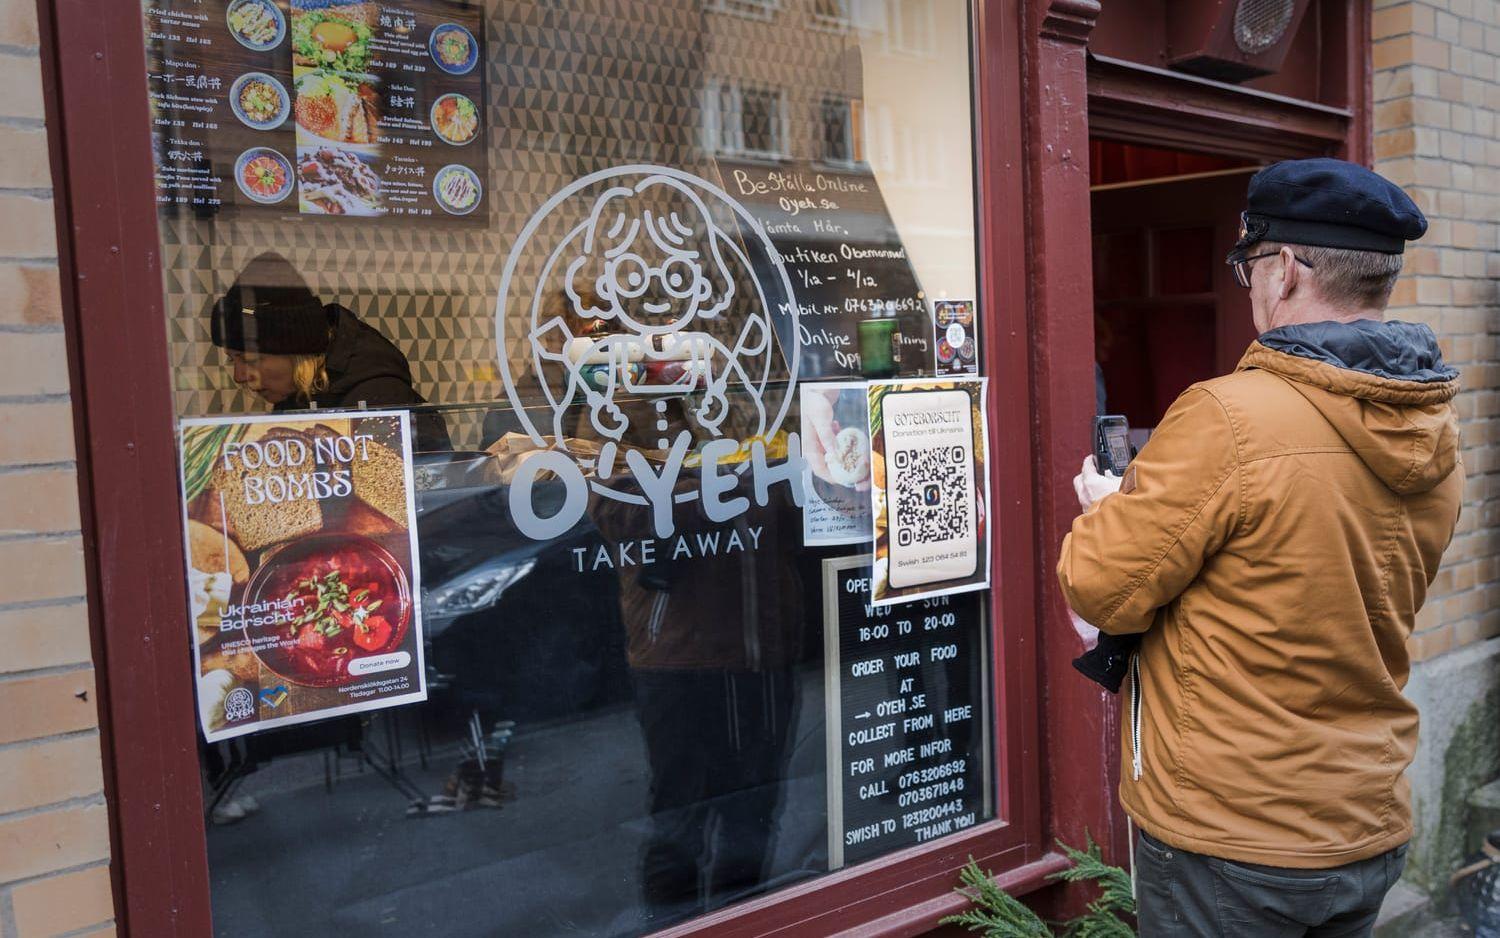 Lokalen man kan köpa take awaysoppan, ligger vägg i vägg med restaurangen Koizen på Nordenskiöldsgatan.